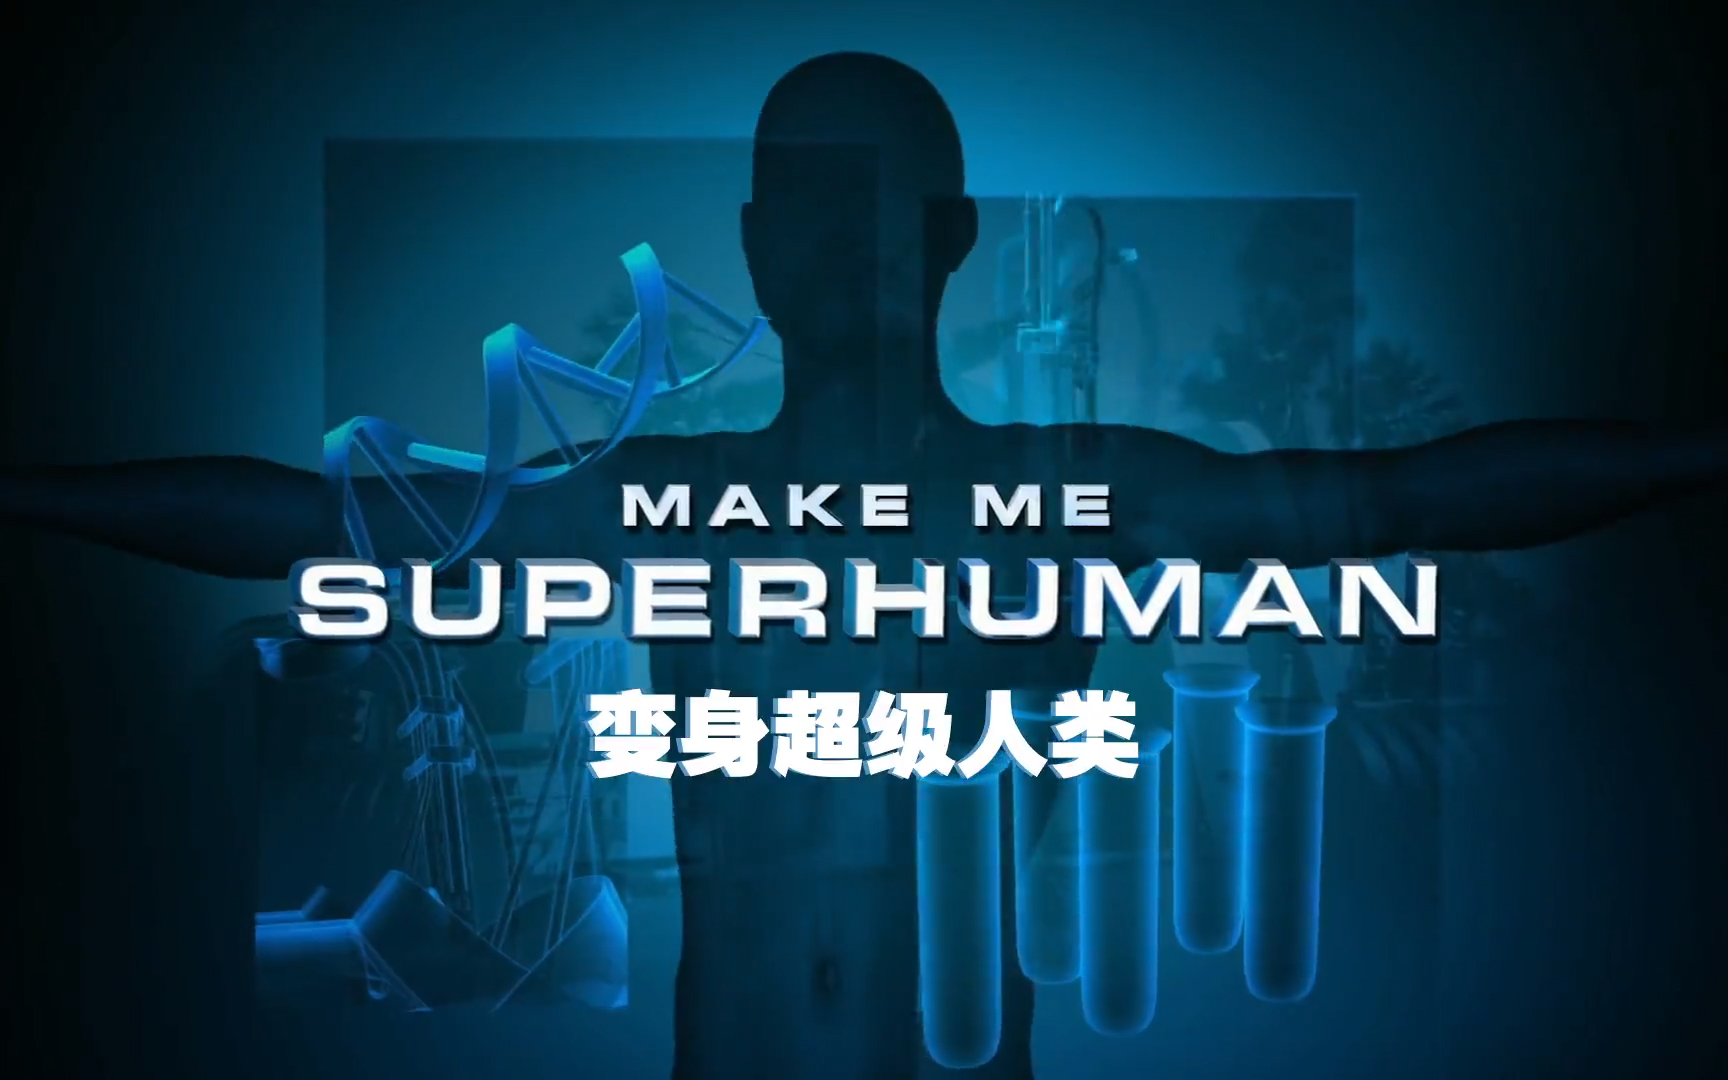 【纪录片】变身超级人类-Make me Superhuman